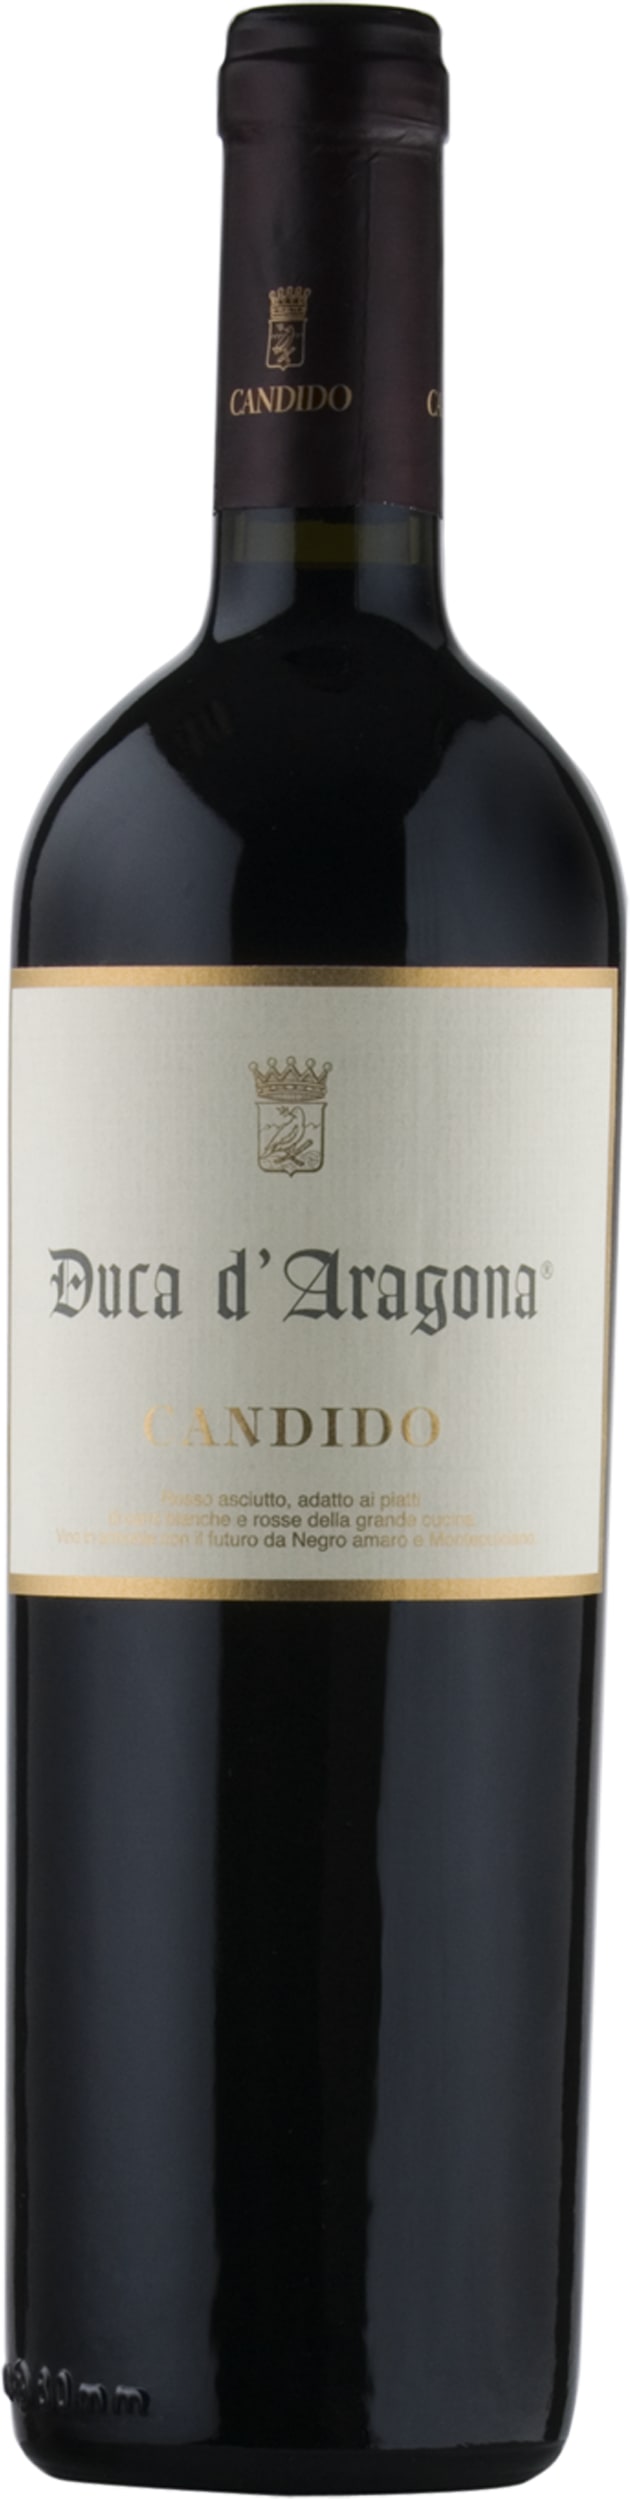 Francesco Candido Duca di Aragona 2018 75cl - Buy Francesco Candido Wines from GREAT WINES DIRECT wine shop